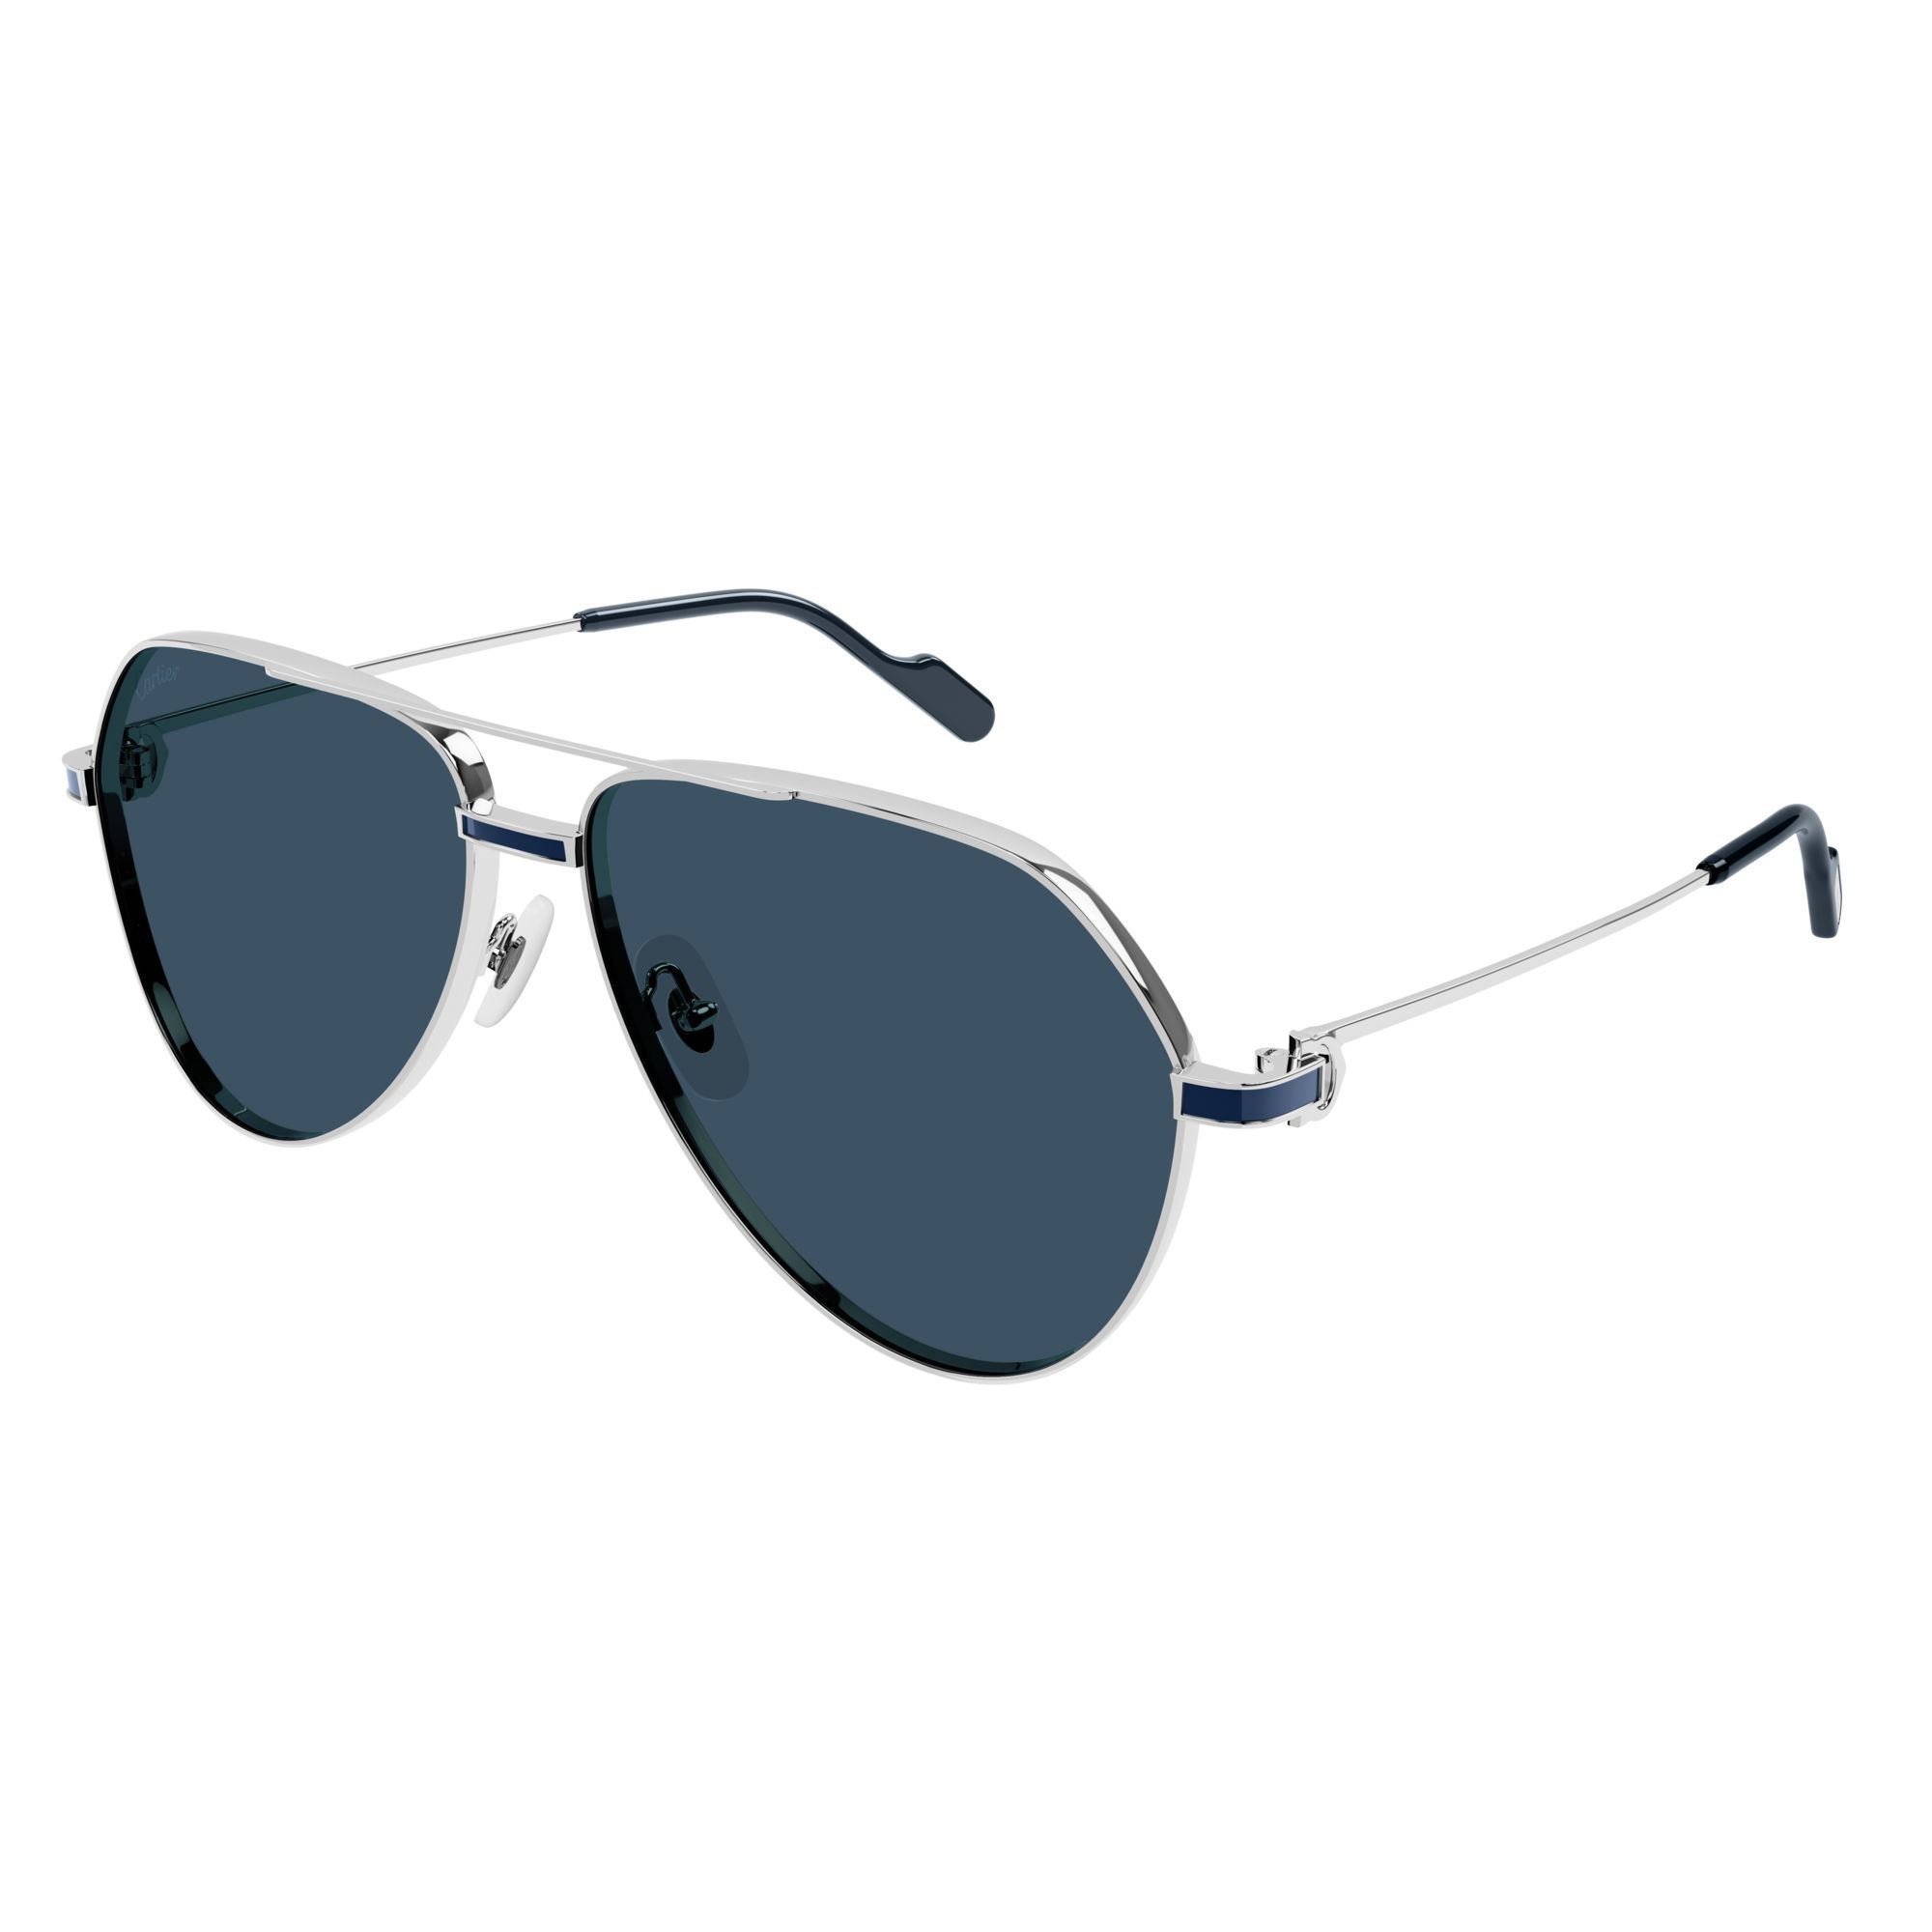 CT0334S Pilot Sunglasses 3 - size 61